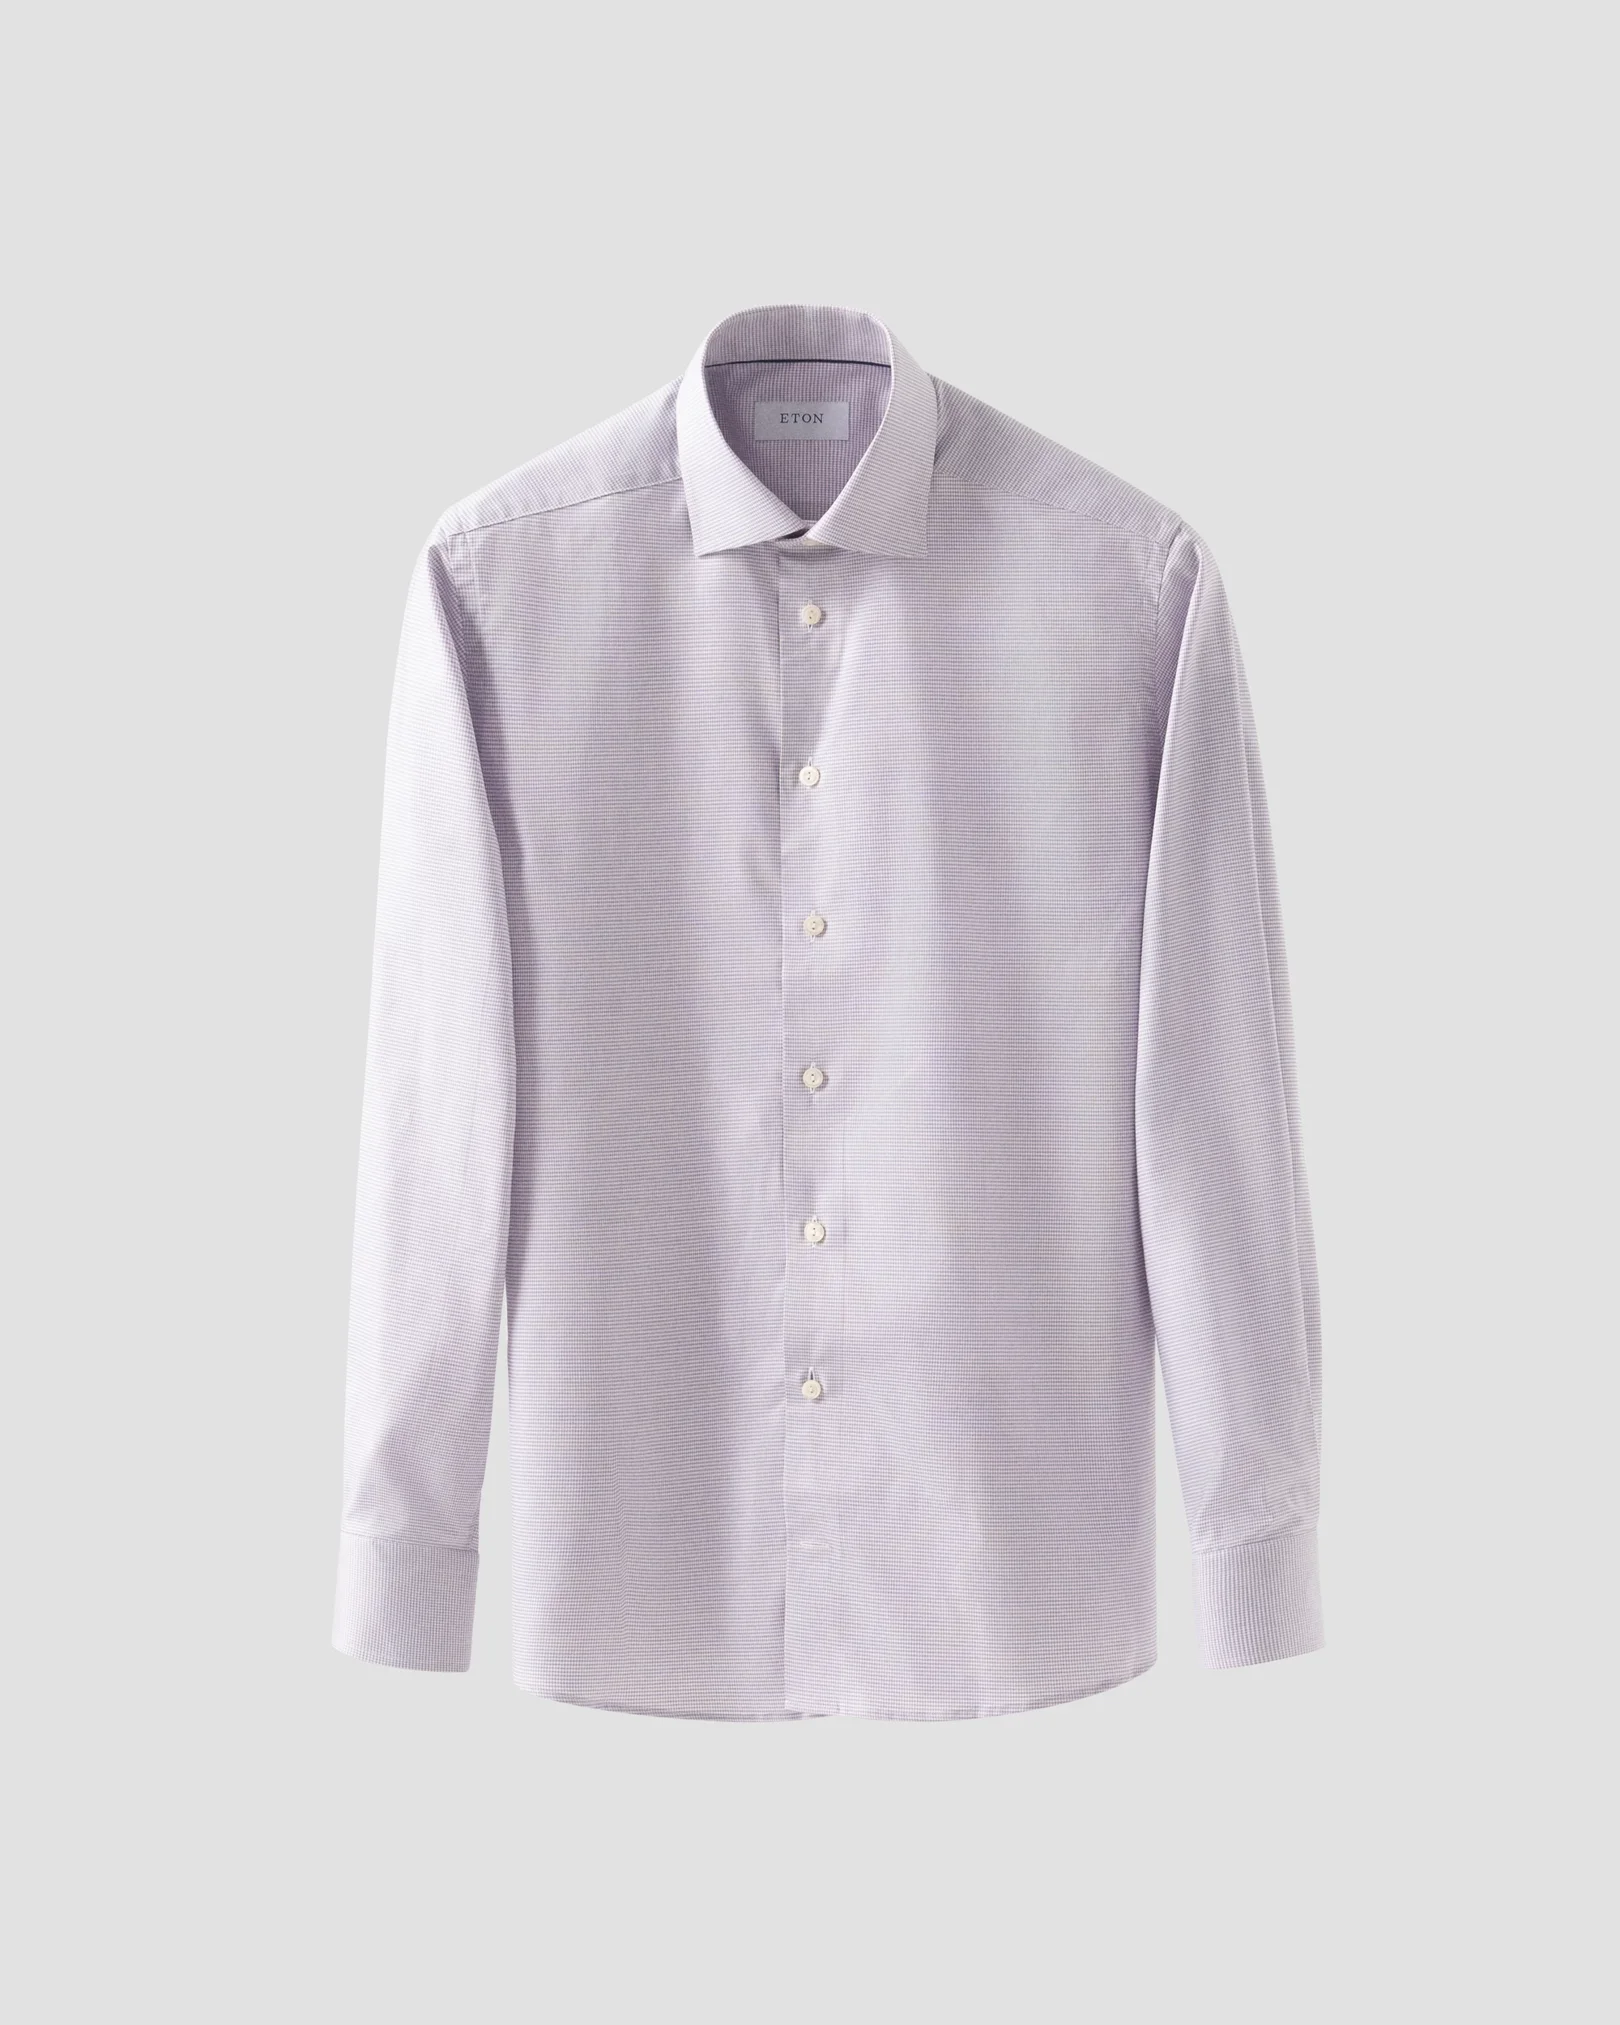 Eton - pink cotton lyocell shirt